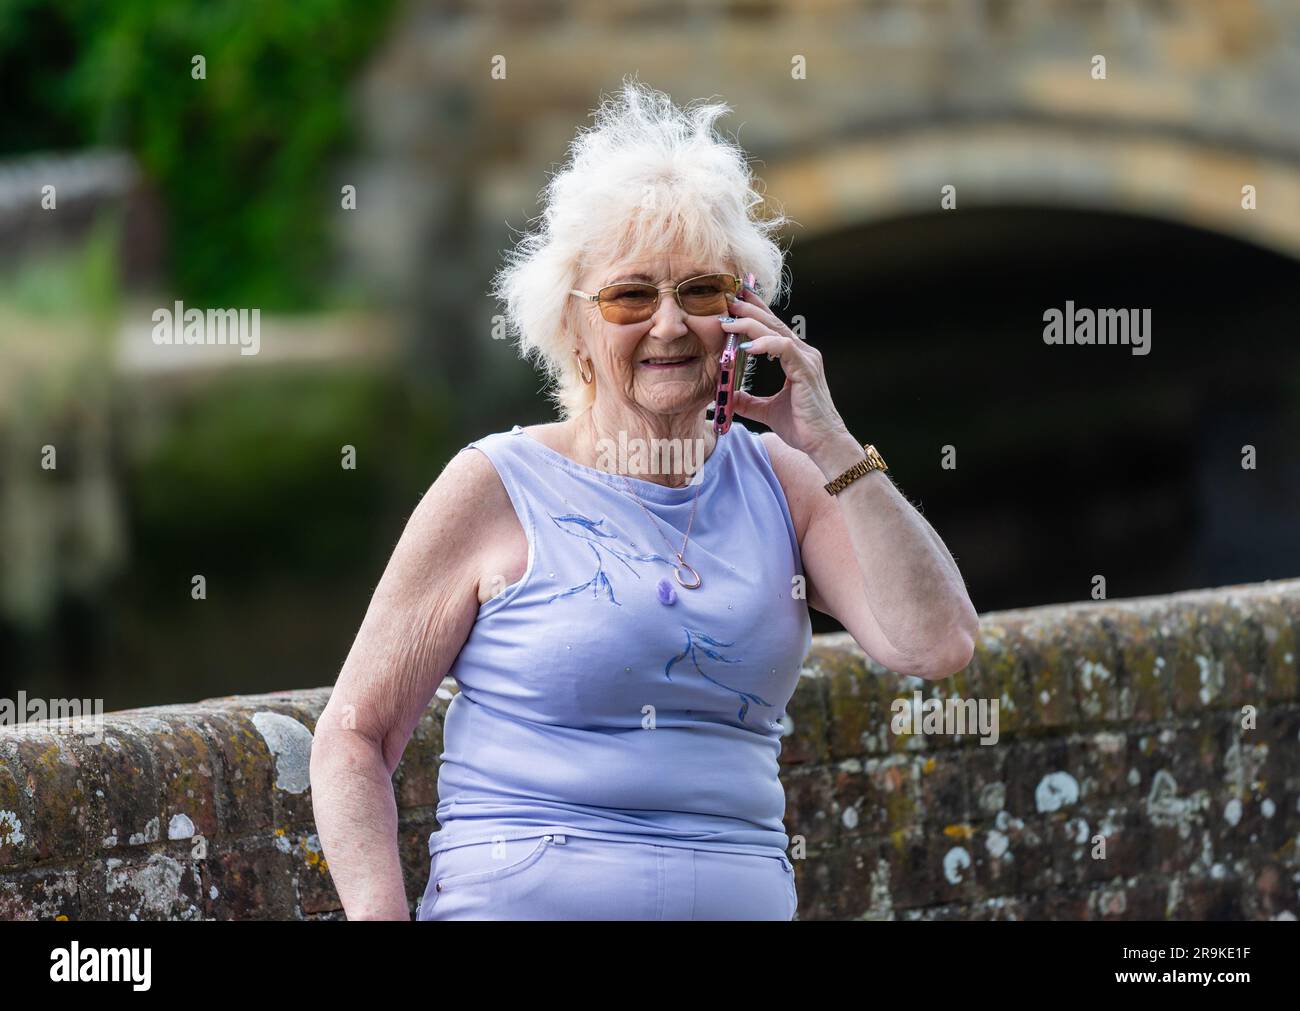 Signora anziana in piedi all'esterno che usa un telefono cellulare, un cellulare o uno smartphone per parlare con qualcuno. Donna anziana aggiornata con la tecnologia moderna, Regno Unito. Foto Stock